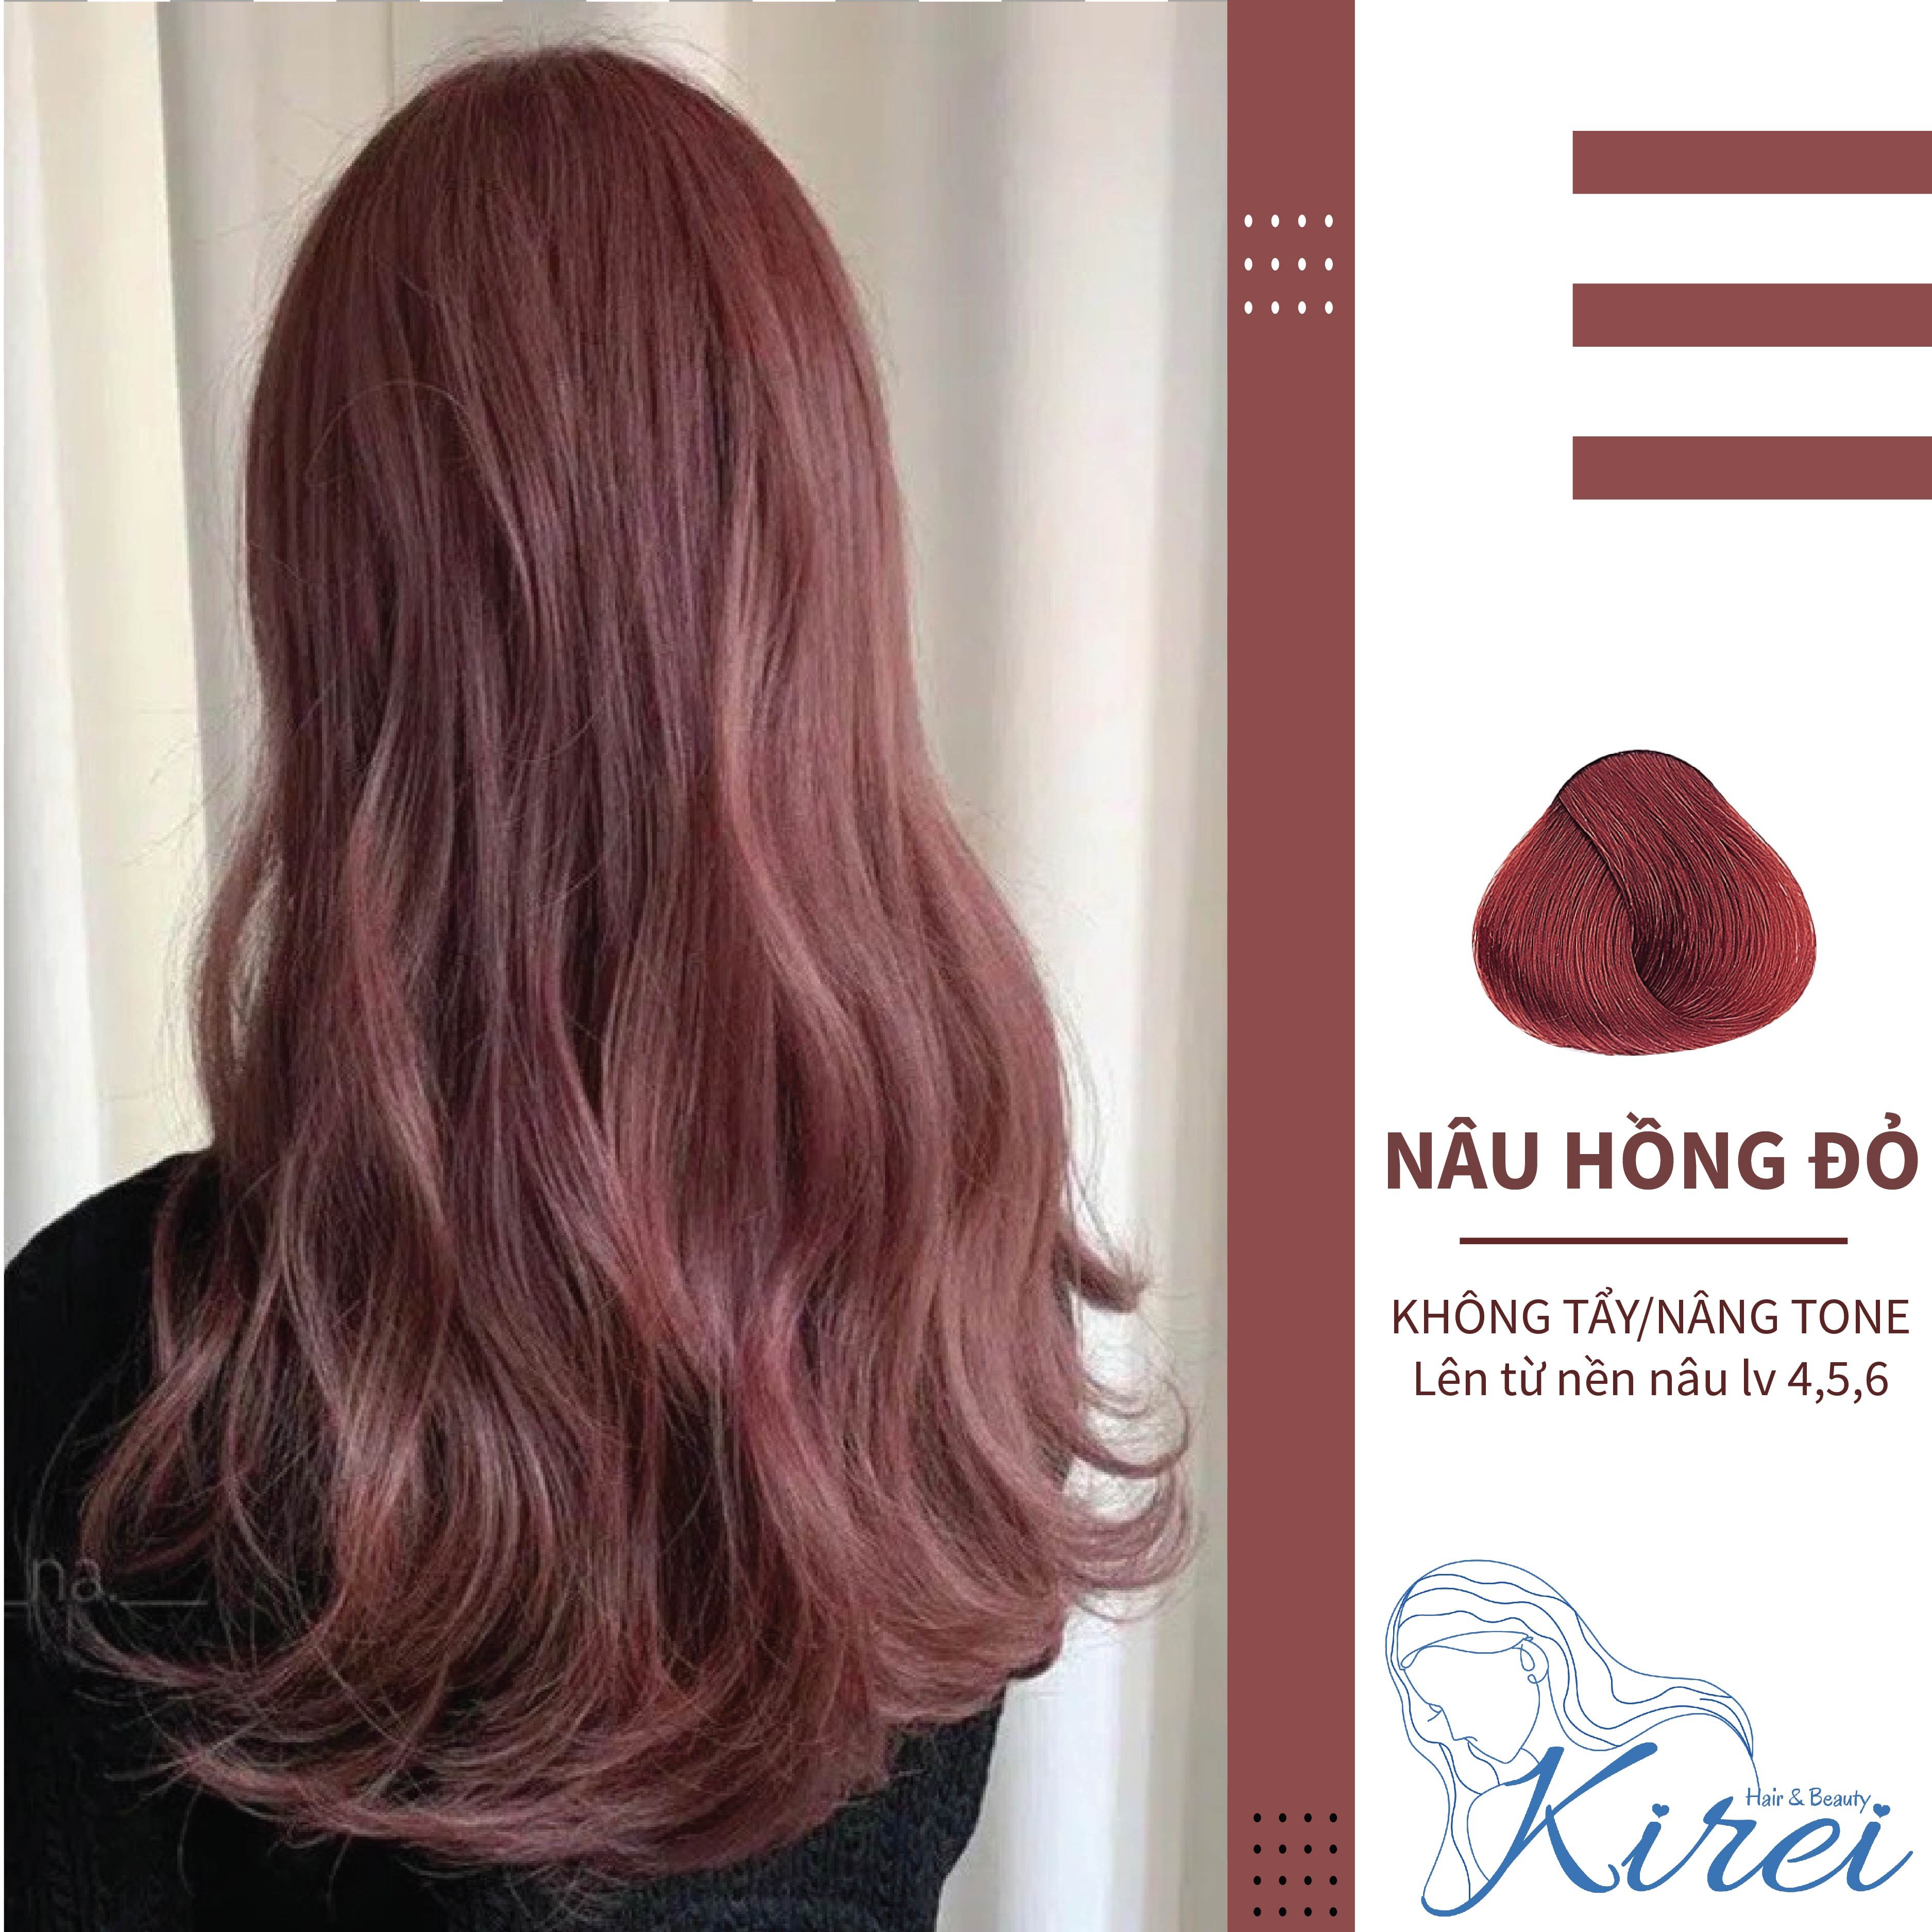 Thuốc nhuộm tóc màu nâu hồng đỏ đang làm mưa làm gió trên thị trường làm đẹp. Đây là một sản phẩm tiên tiến cho phép bạn nhuộm tóc theo phong cách riêng của mình mà không cần đến tiệm tóc. Bạn sẽ cảm thấy tự tin hơn với mái tóc đầy sức sống này.